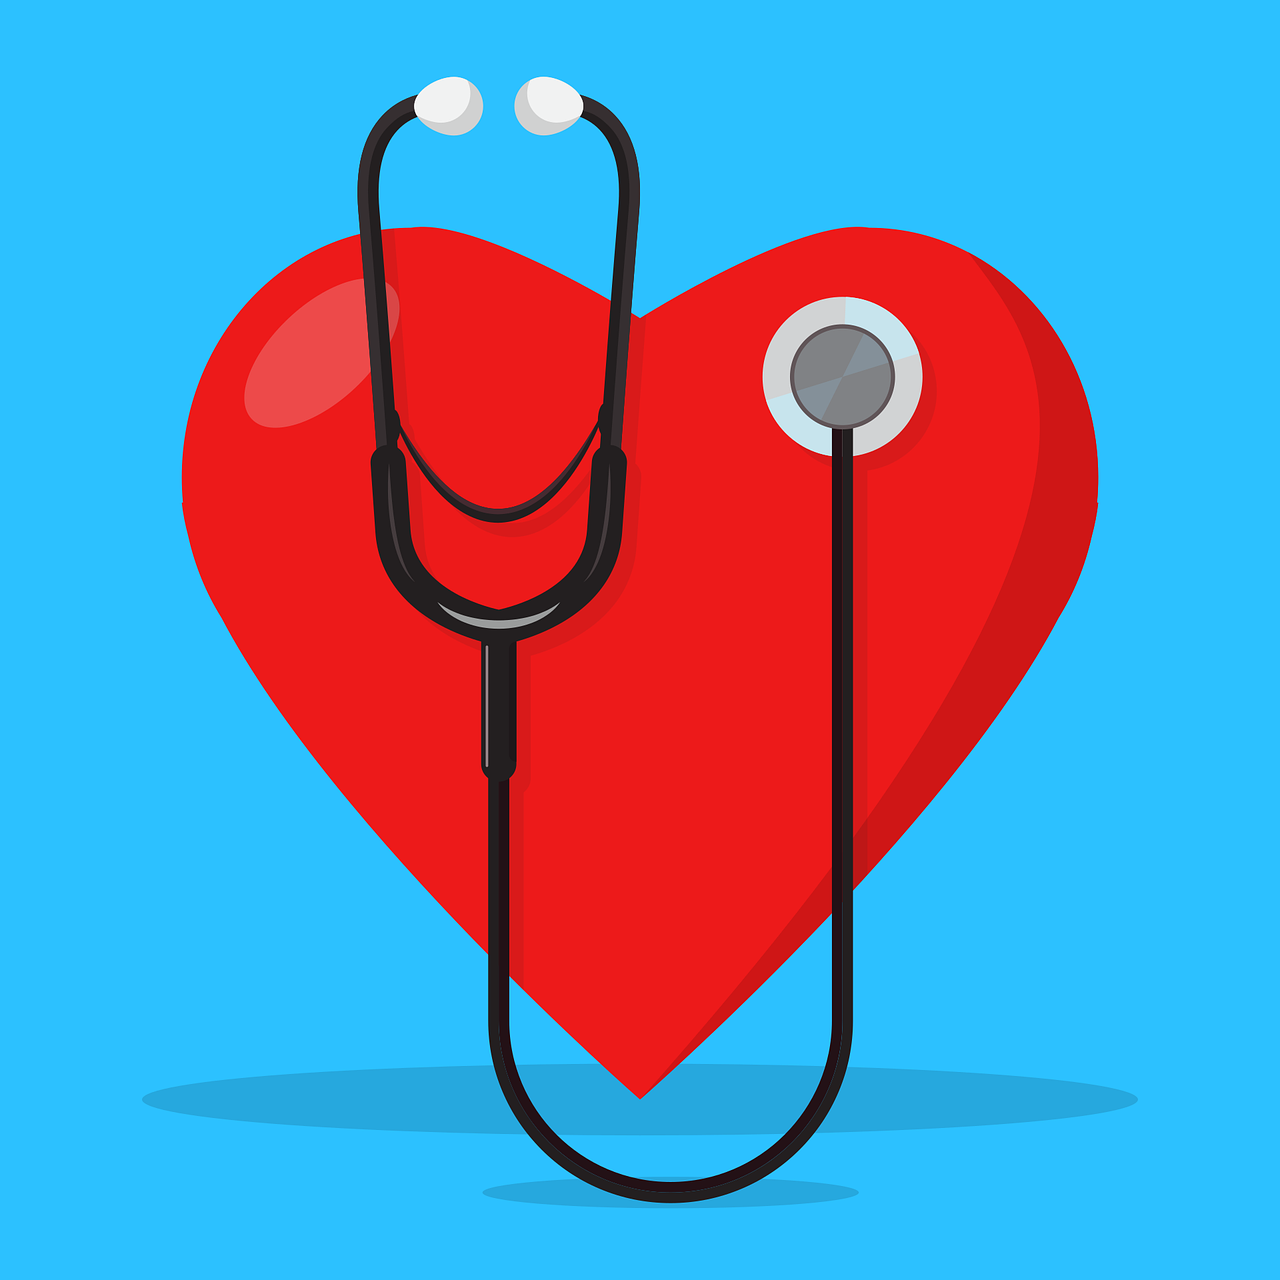 2021ESC心脏起搏和心脏再同步治疗指南更新内容解读